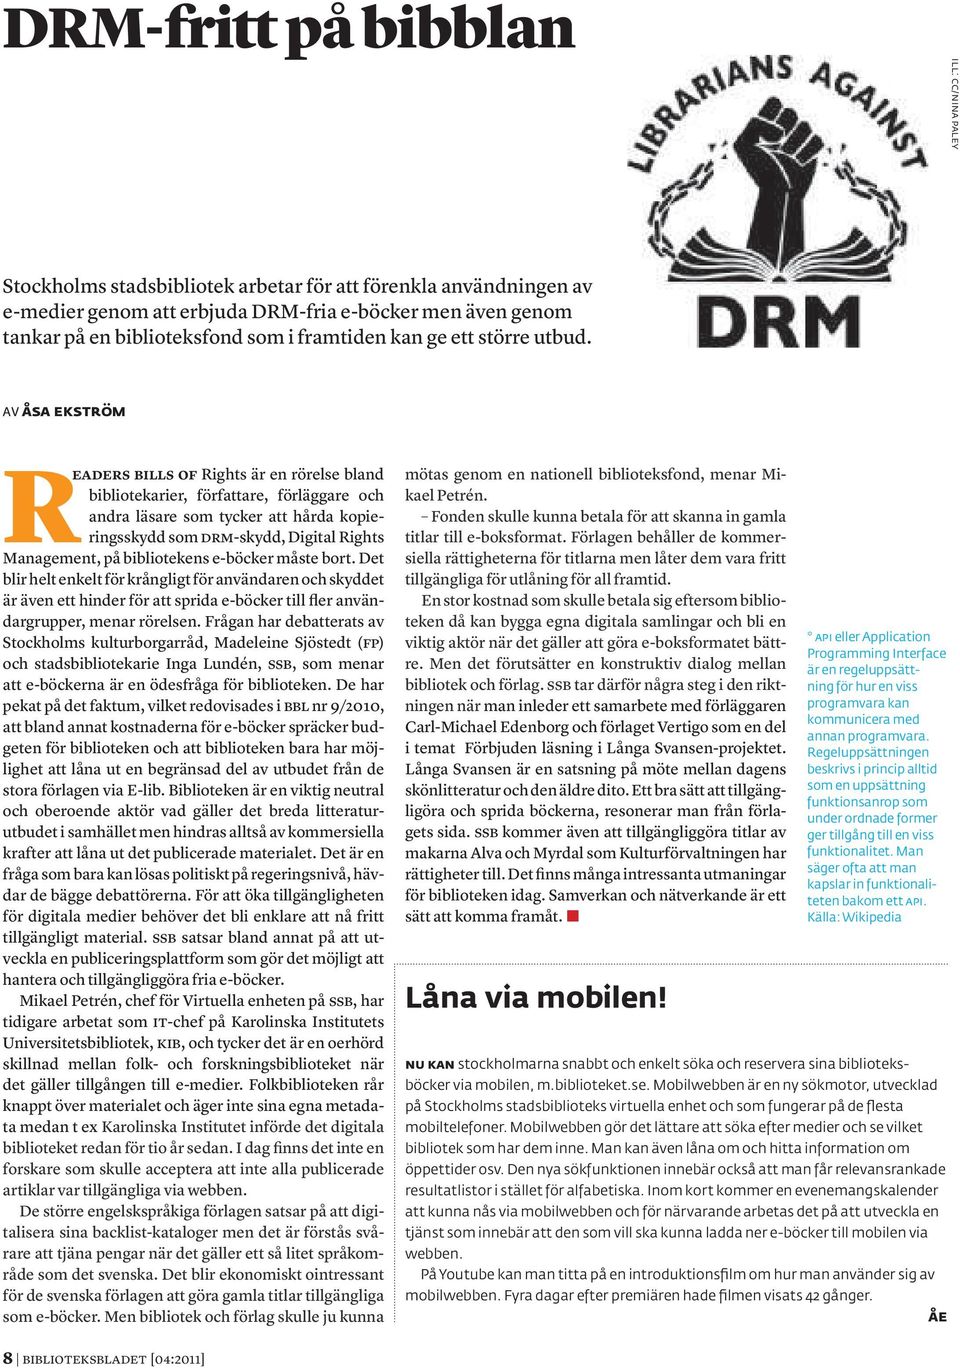 Av Åsa Ekström Readers Bills of Rights är en rörelse bland bibliotekarier, författare, förläggare och andra läsare som tycker att hårda kopieringsskydd som DRM-skydd, Digital Rights Management, på